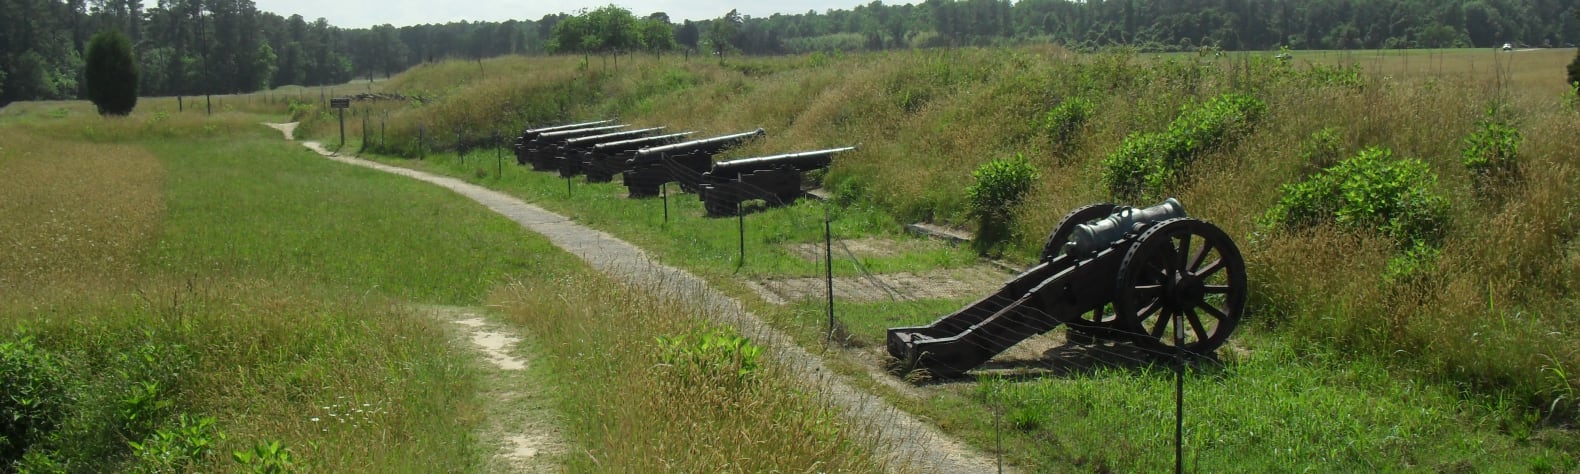 Yorktown Battlefield